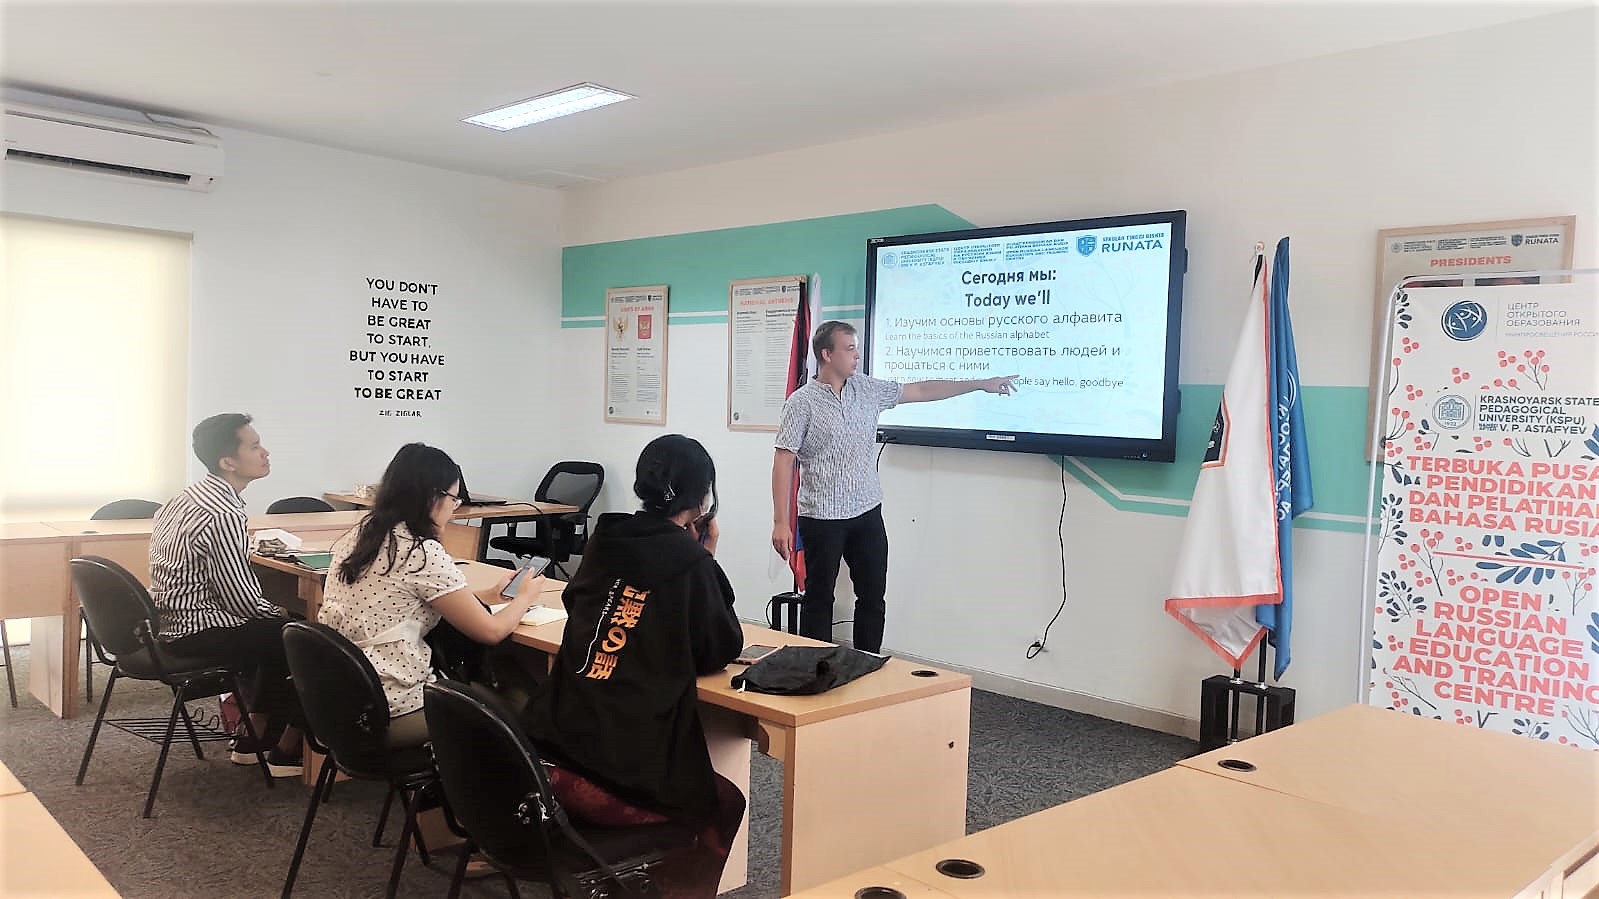 Dinas Pariwisata Kota Denpasar Bekerja sama dengan STB Runata mengadakan kursus Bahasa Rusia Gratis